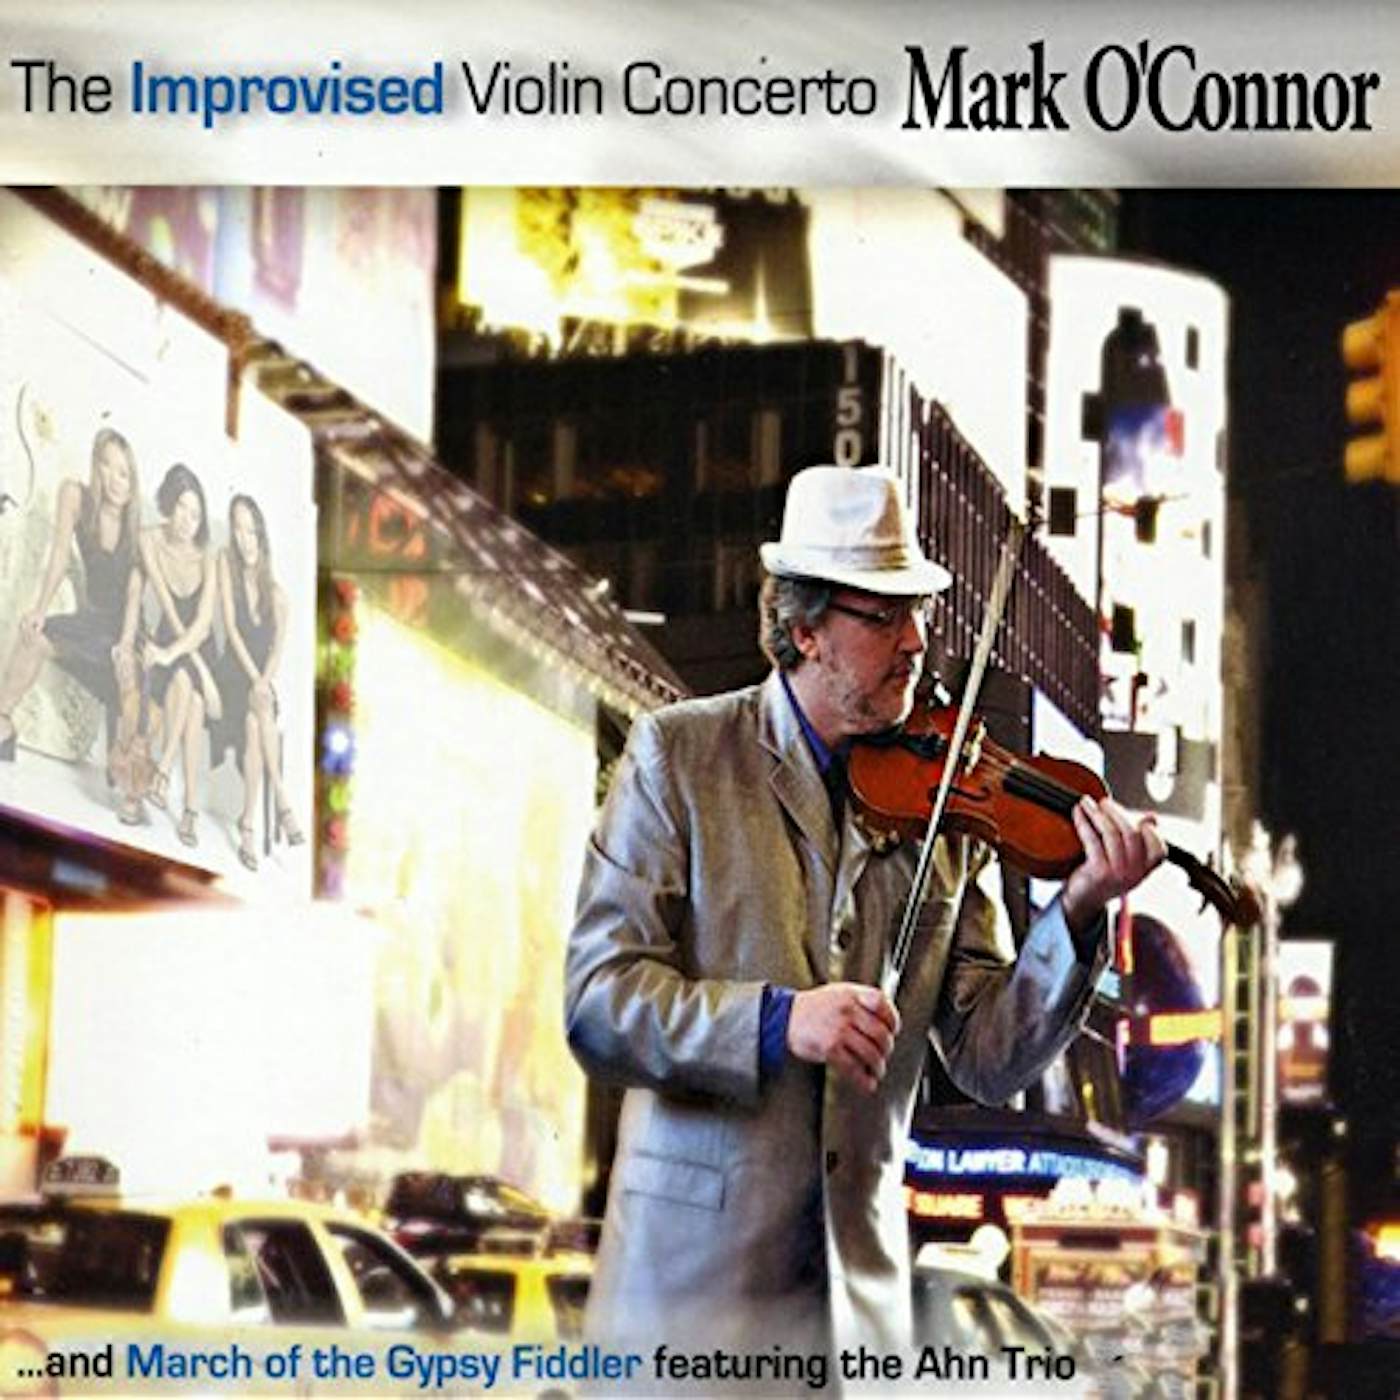 Mark O'Connor IMPROVISED VIOLIN CONCERTO CD